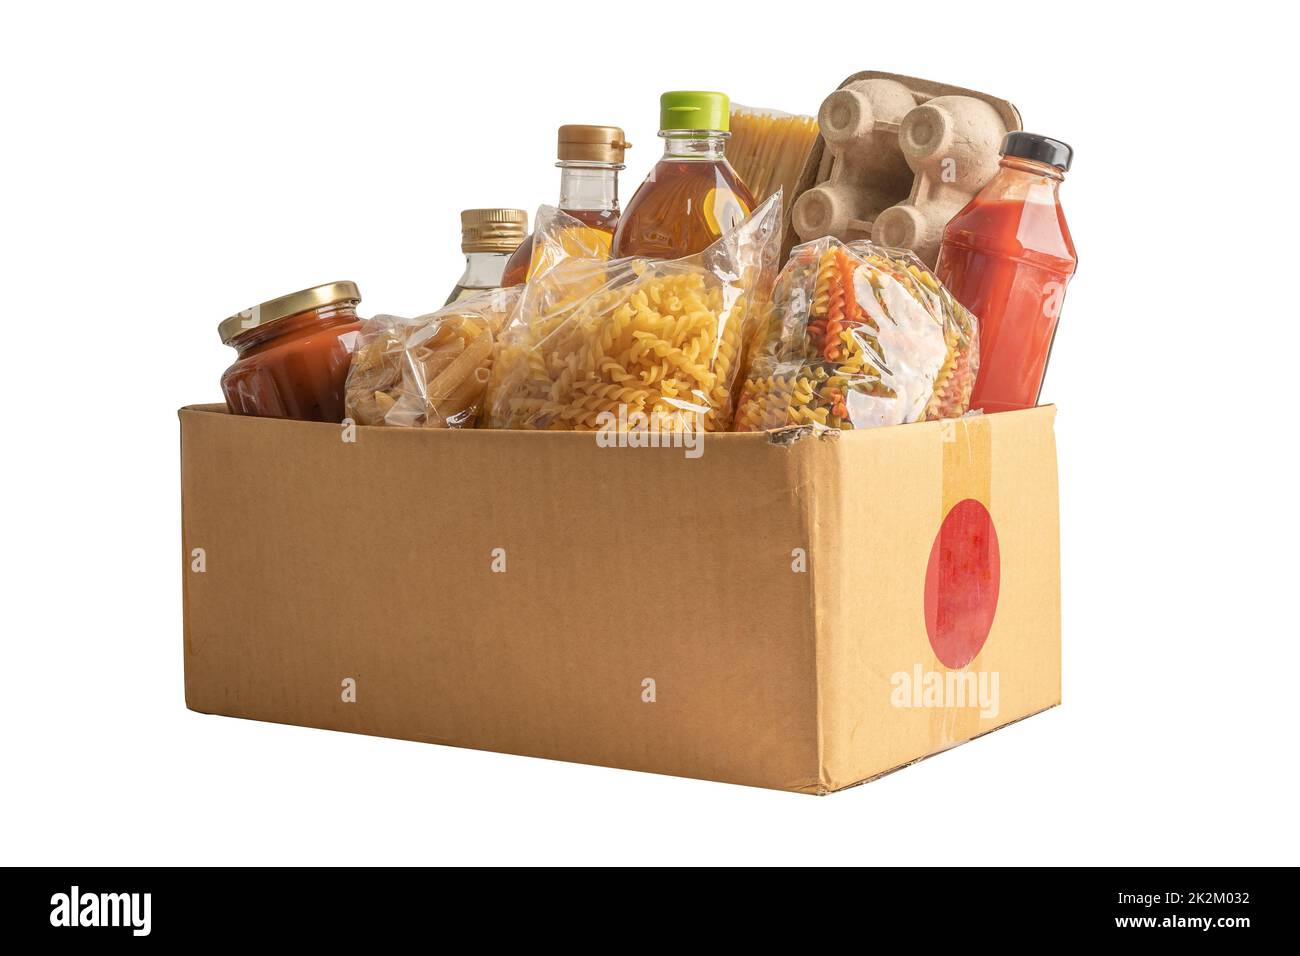 Lebensmittel für Spenden, Lagerung und Lieferung. Verschiedene Lebensmittel, Pasta, Speiseöl und Konserven in Pappkartons. Stockfoto